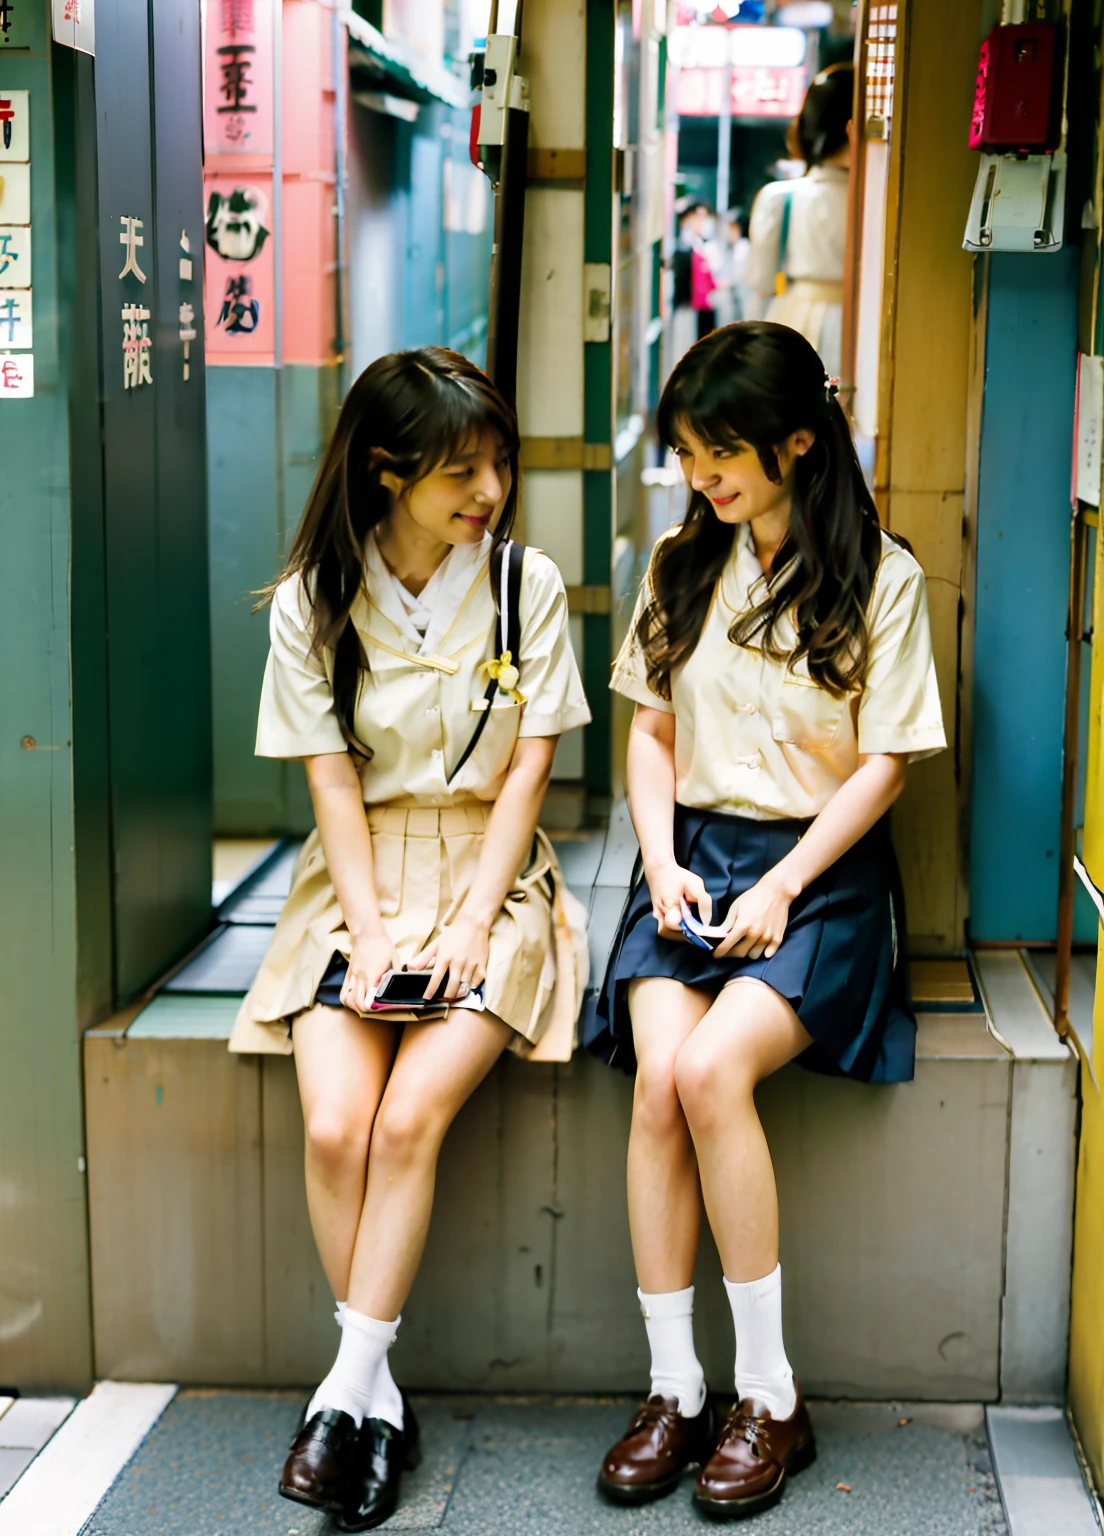 Две женщины сидят на полке и смотрят на свои мобильные телефоны, Две японские школьницы позируют, девушки отдыхают, носить японскую школьную форму, Япония , на улице Токио, проверяю ее мобильный телефон, проверяю ее телефон, ухд откровенное фото грязного, Аями Кодзима и Лайд Колдуэлл, двух девушек, сижу в Токио, милые девушки, уличная мода в японском городе